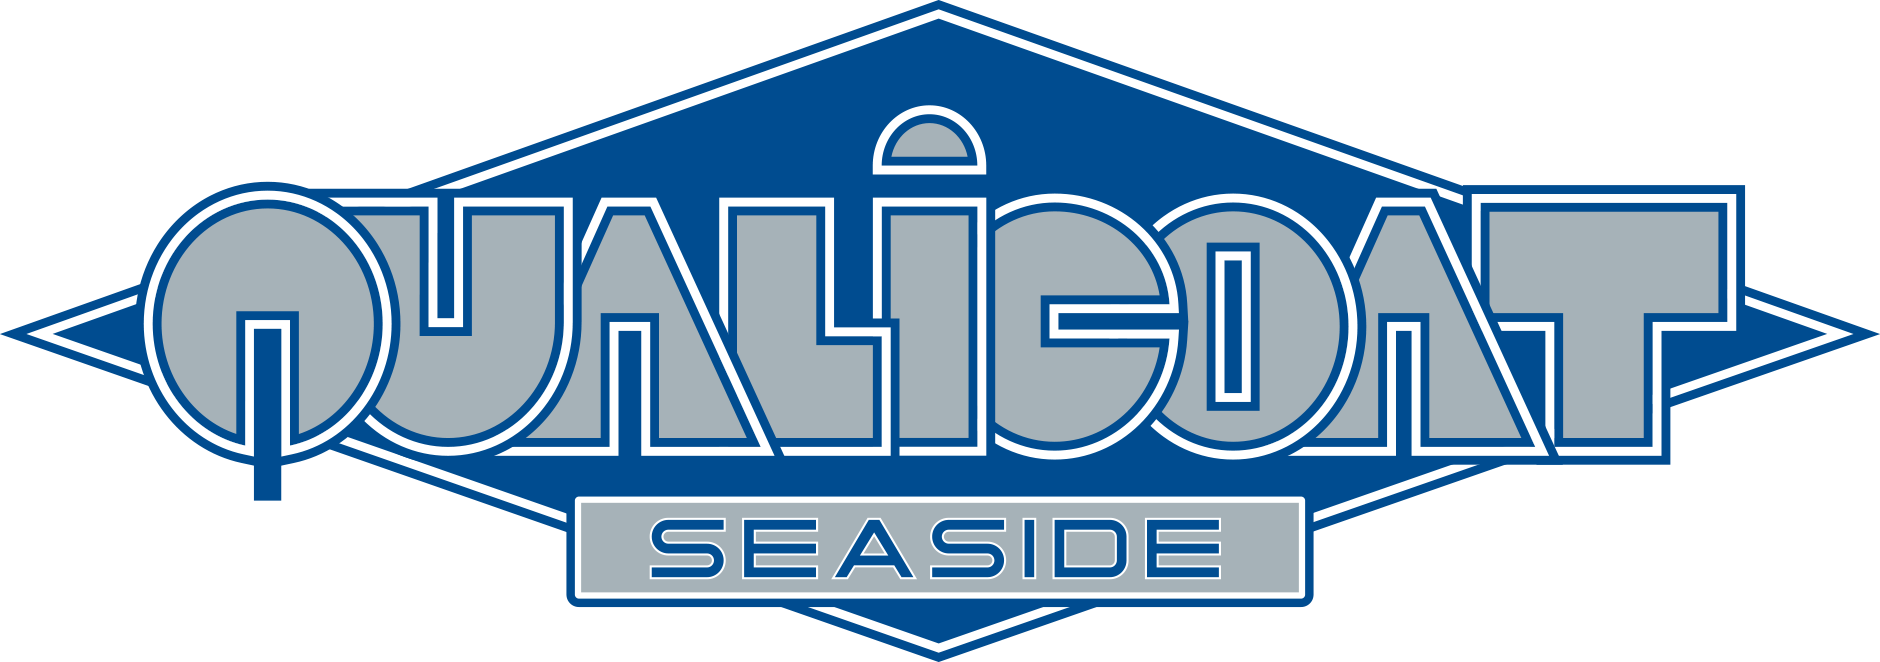 qualicoat seaside logo